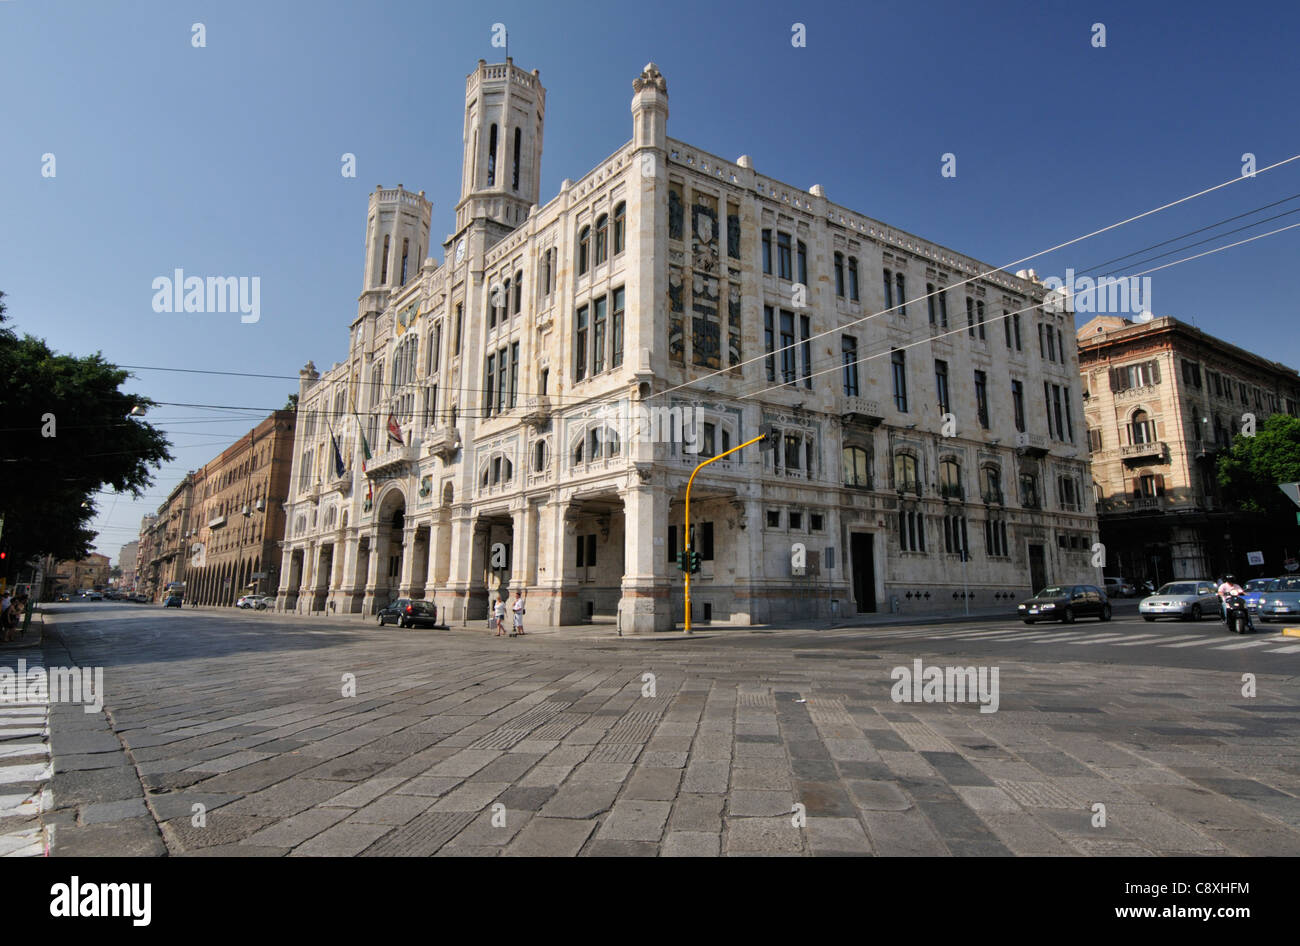 Architecture of the Municipio, the city hall of Cagliari, Sardinia, Italy Stock Photo